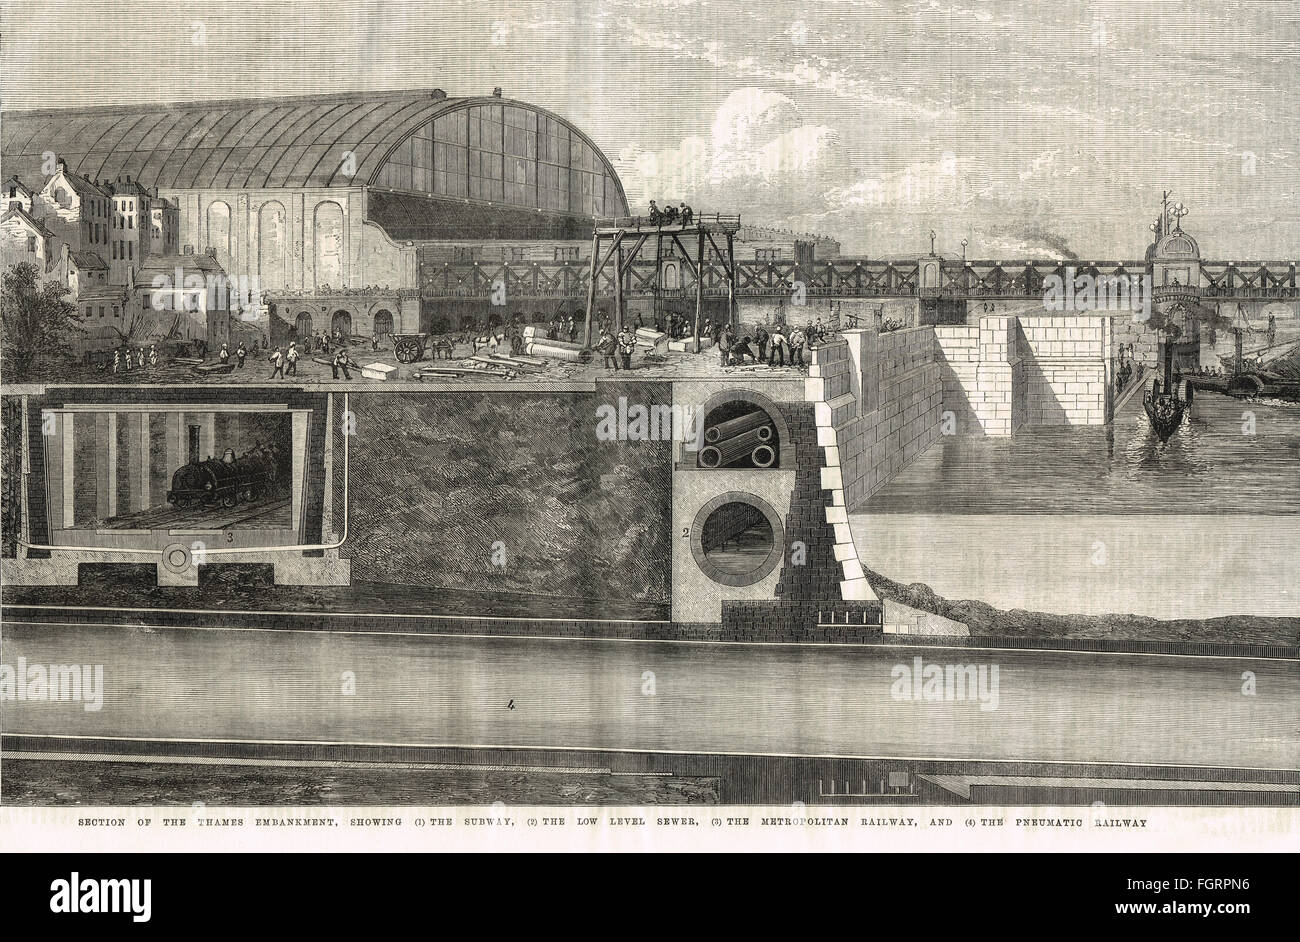 Il Tamigi Embankment in sezione trasversale 1867 che mostra il funzionamento del costruito in parte pneumatica Rammell stazione Waterloo e Whitehall Railway Foto Stock